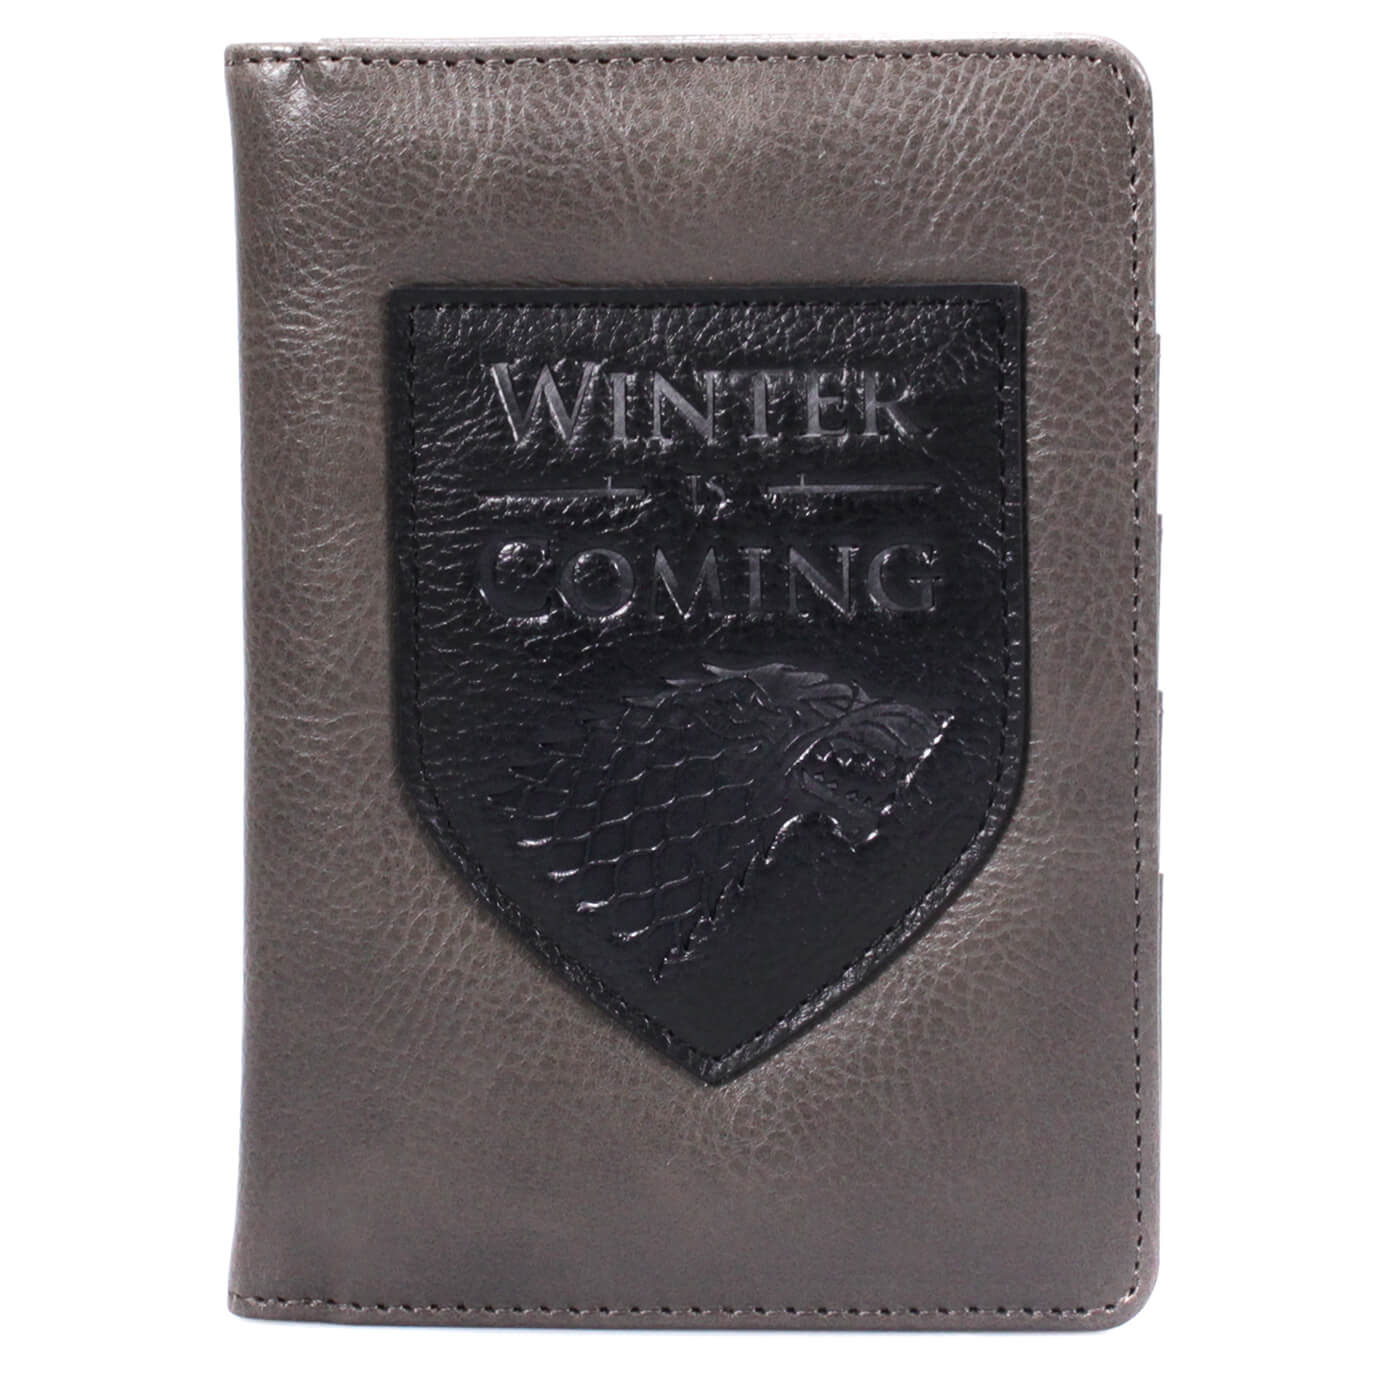 Game of Thrones Passport Wallet - Winter Is Coming